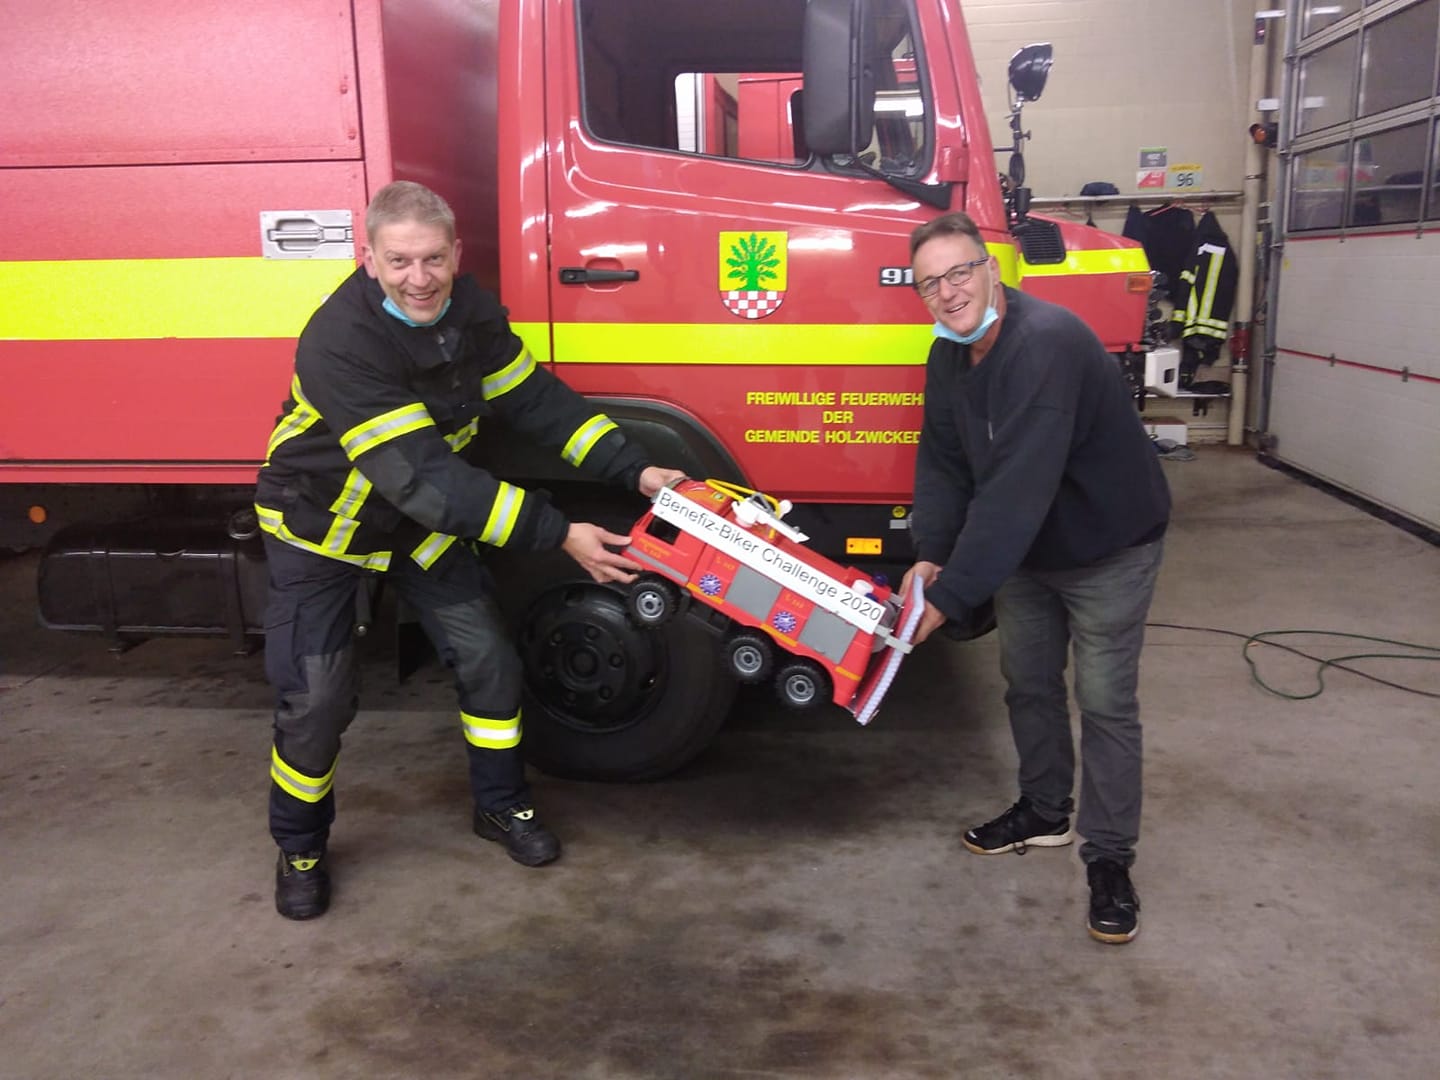 Übergabe des XXL Feuerwehrautos an die Freiwillige Feuerwehr Holzwicke